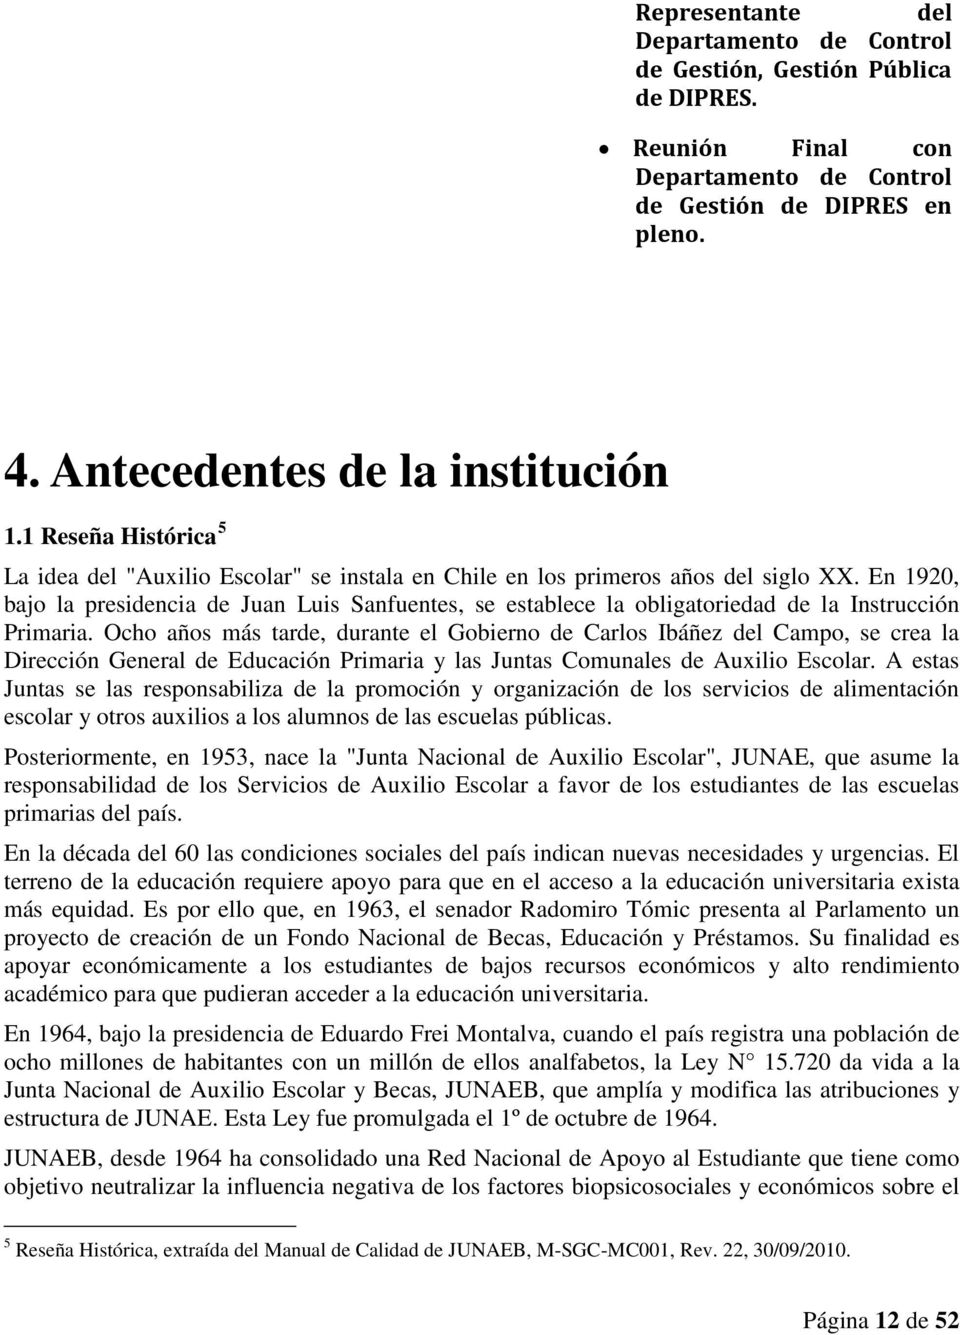 En 1920, bajo la presidencia de Juan Luis Sanfuentes, se establece la obligatoriedad de la Instrucción Primaria.